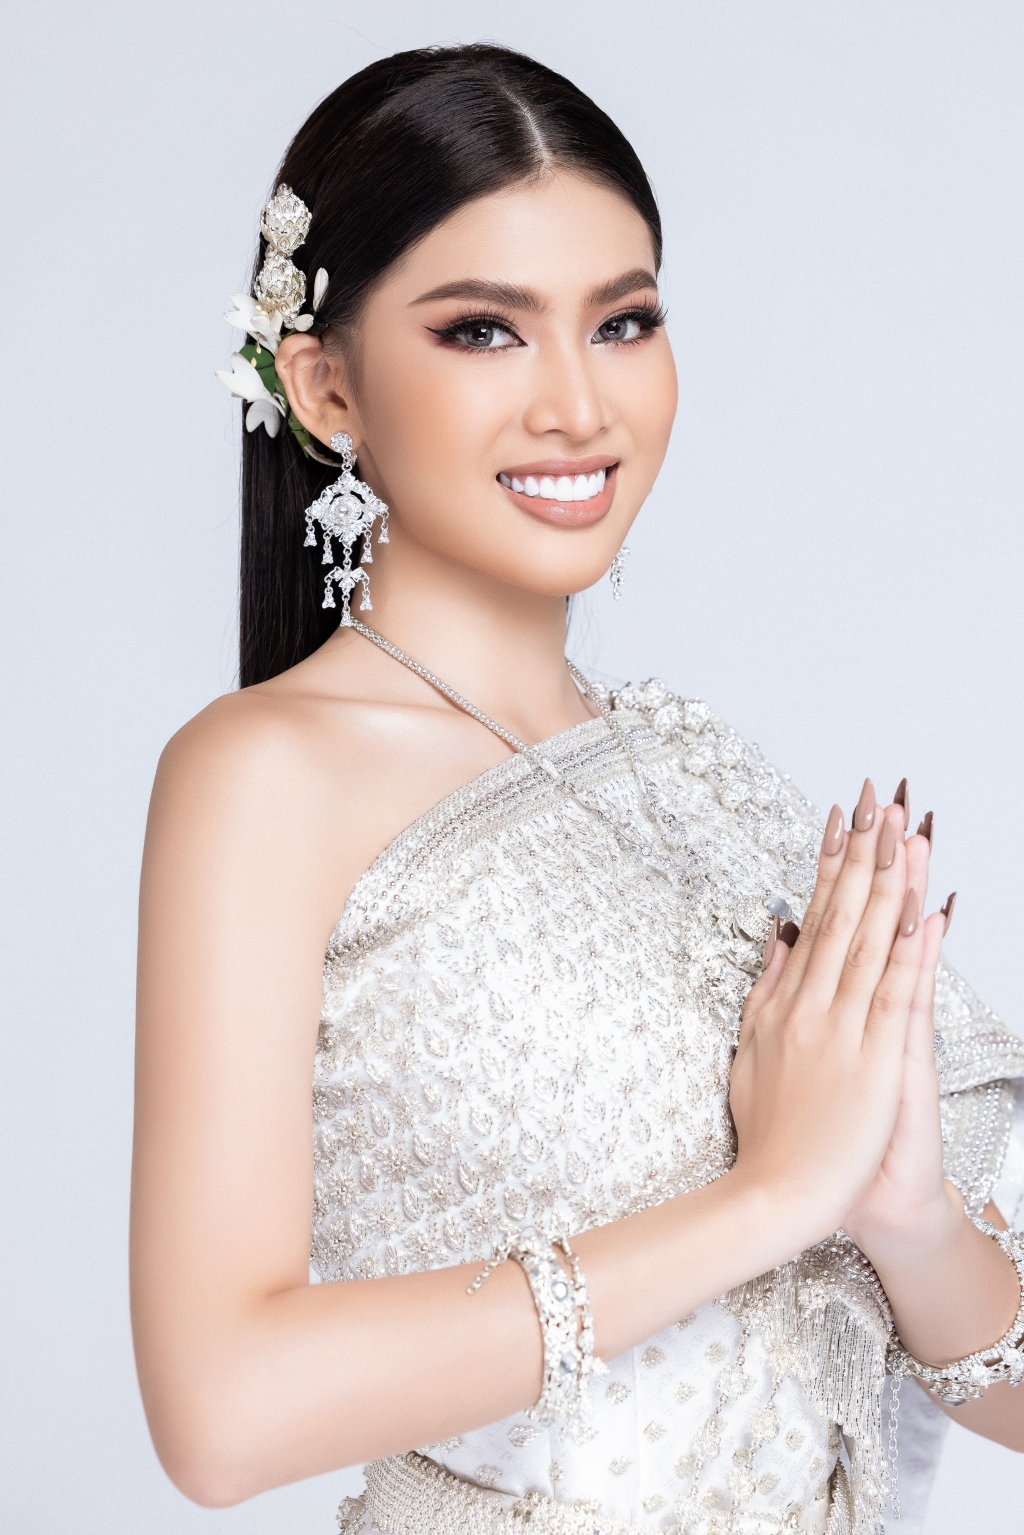 Sau khi lọt top 10 bình chọn video tự giới thiệu, Á hậu Ngọc Thảo tiếp tục thử thách mặc trang phục Thái